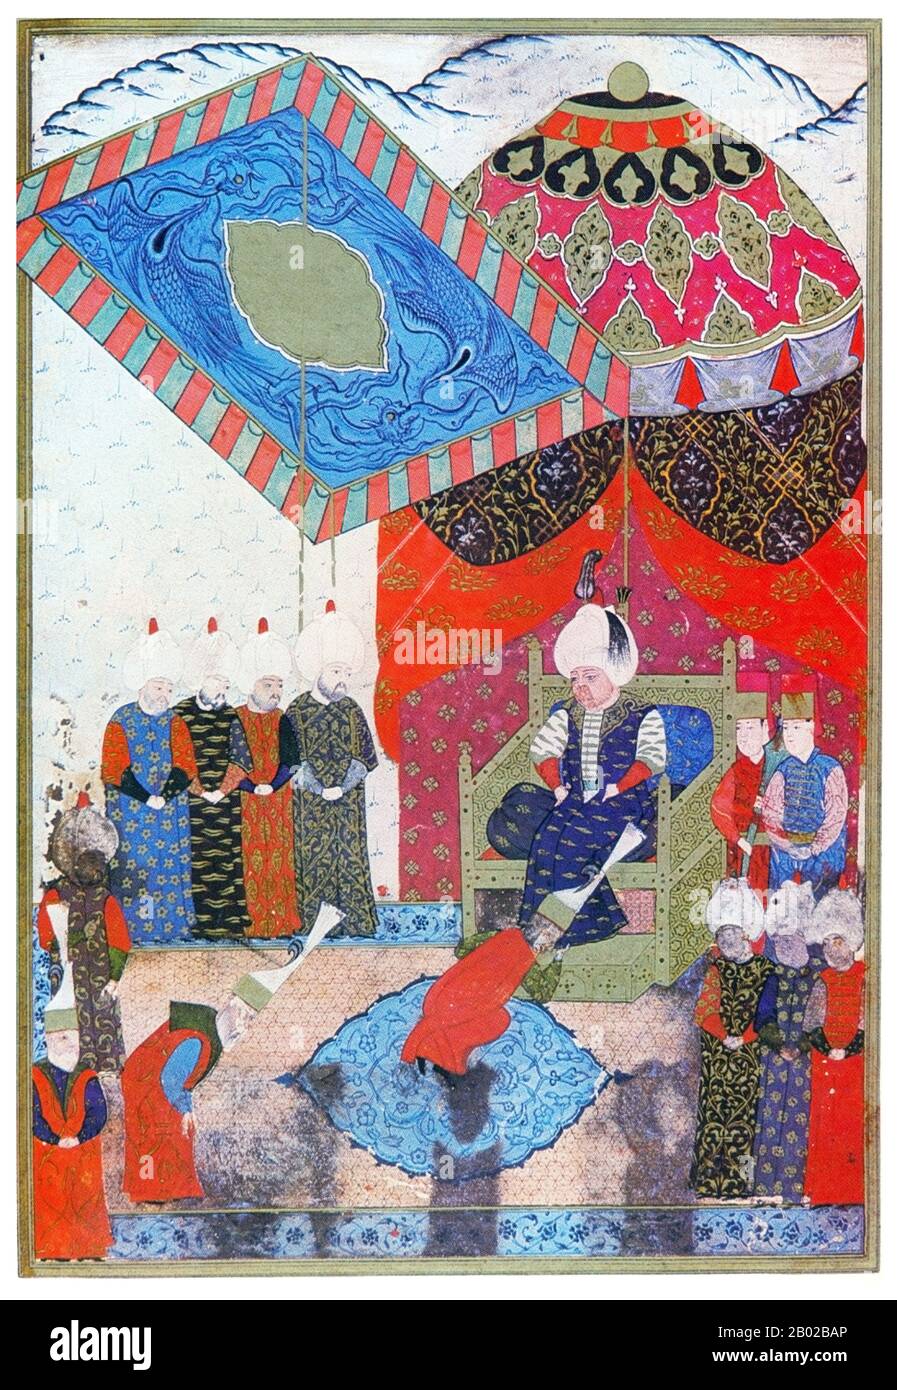 Selim II (turc ottoman: سليم ثانى Selīm-i sānī; 28 mai 1524 – 12 décembre/15 décembre 1574); aussi connu sous le nom de 'Selim the Sot' et comme 'Sarı Selim' (Selim the Blond); était le sultan de l'Empire ottoman de 1566 à sa mort en 1574. Banque D'Images